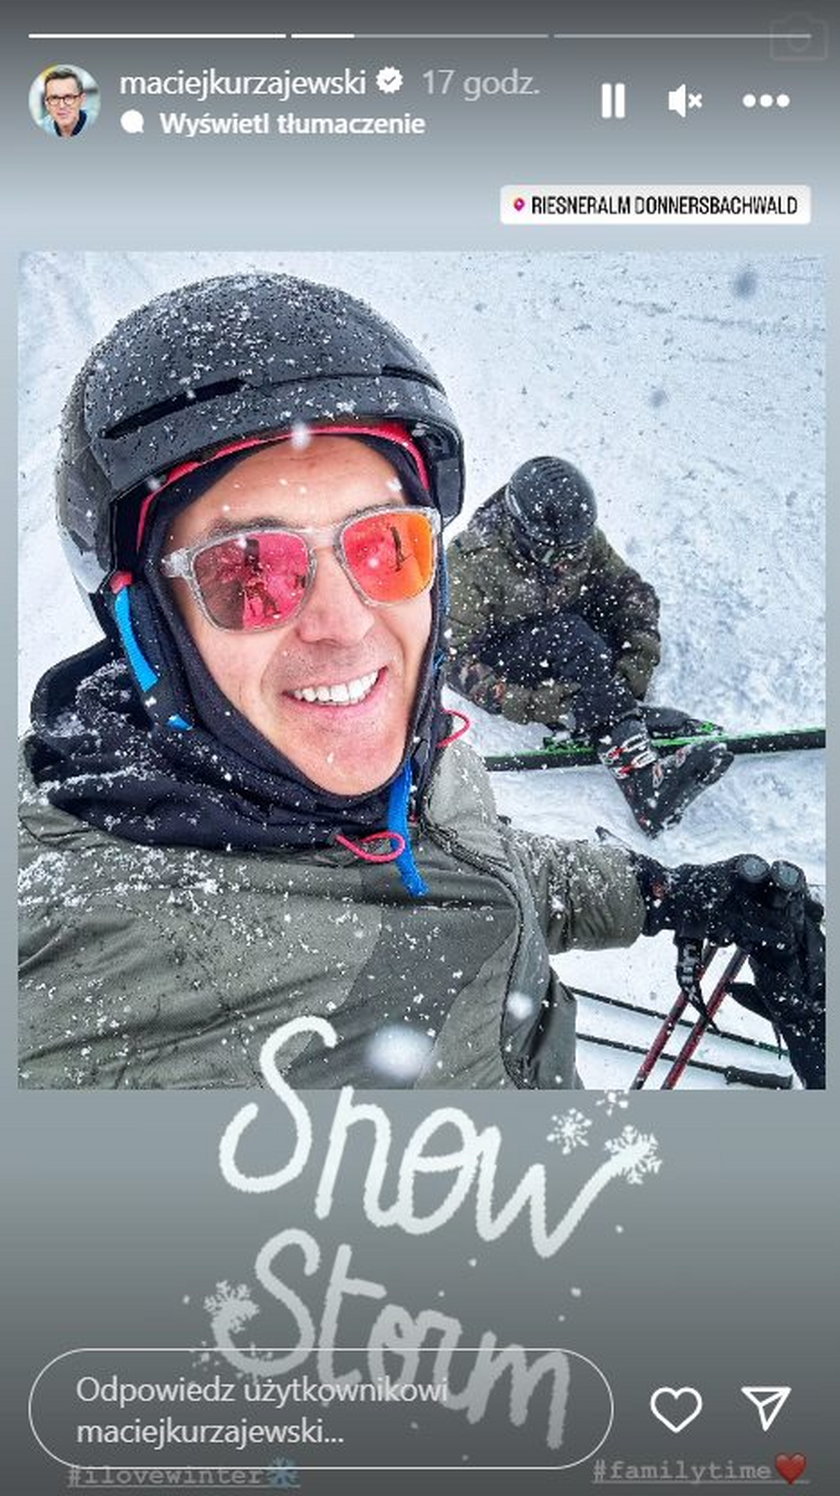 Maciej Kurzajewski jeździe na nartach w Austrii. 